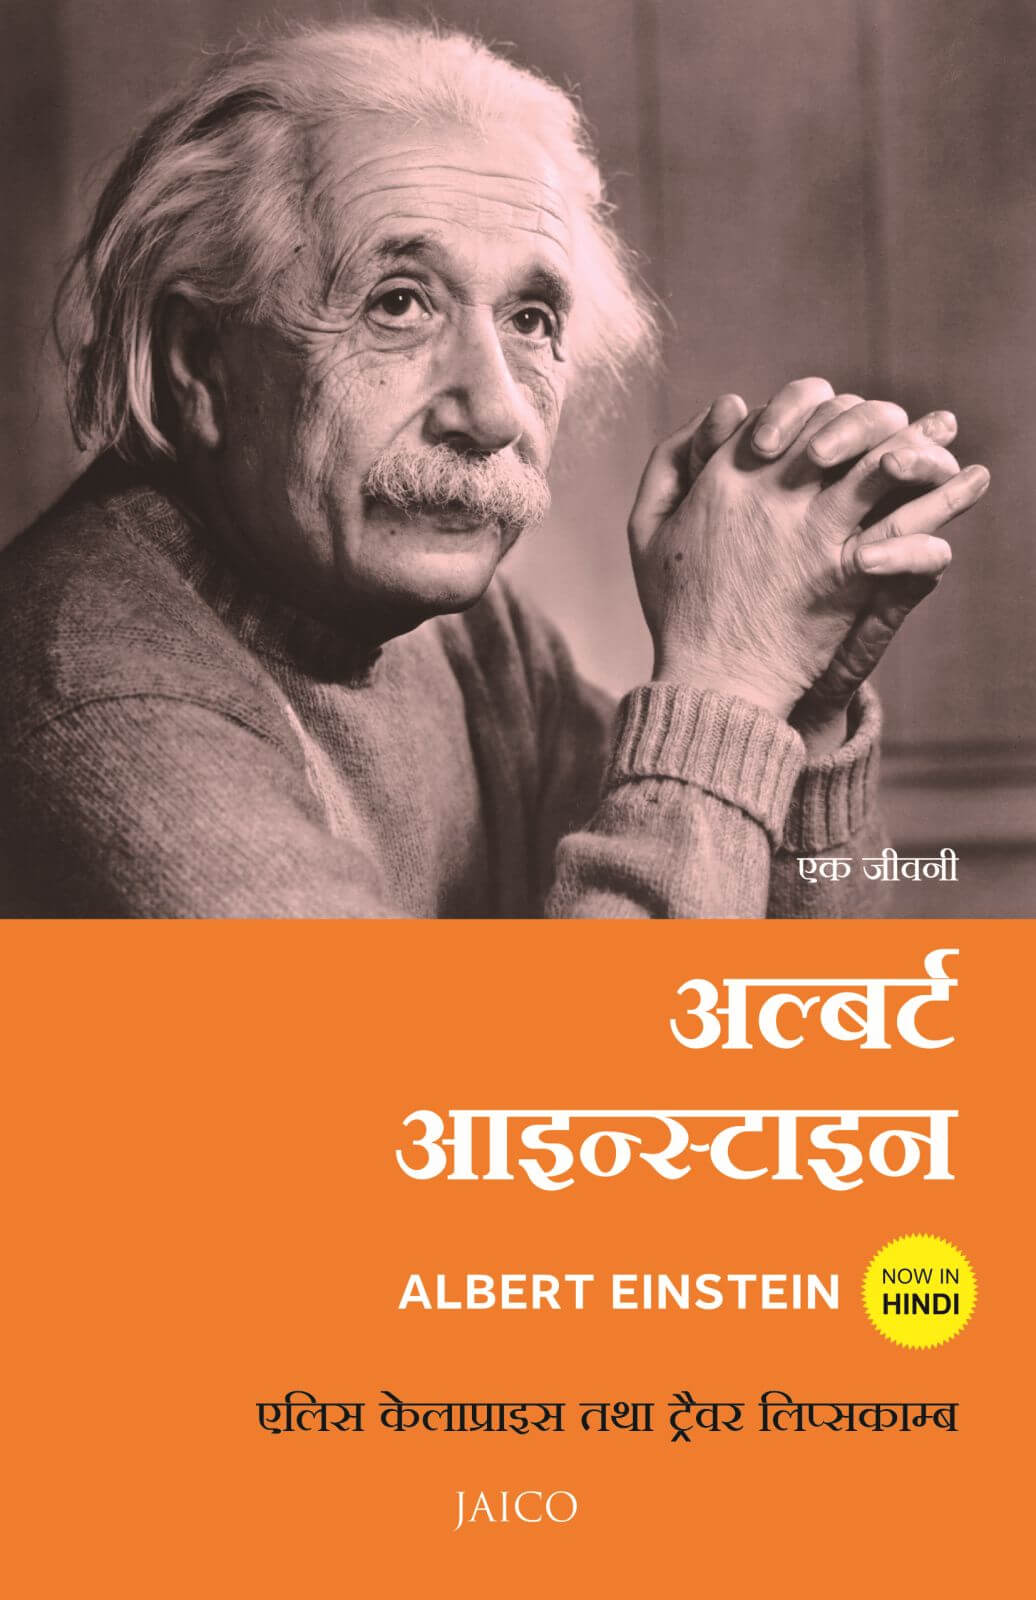 albert einstein biography hindi